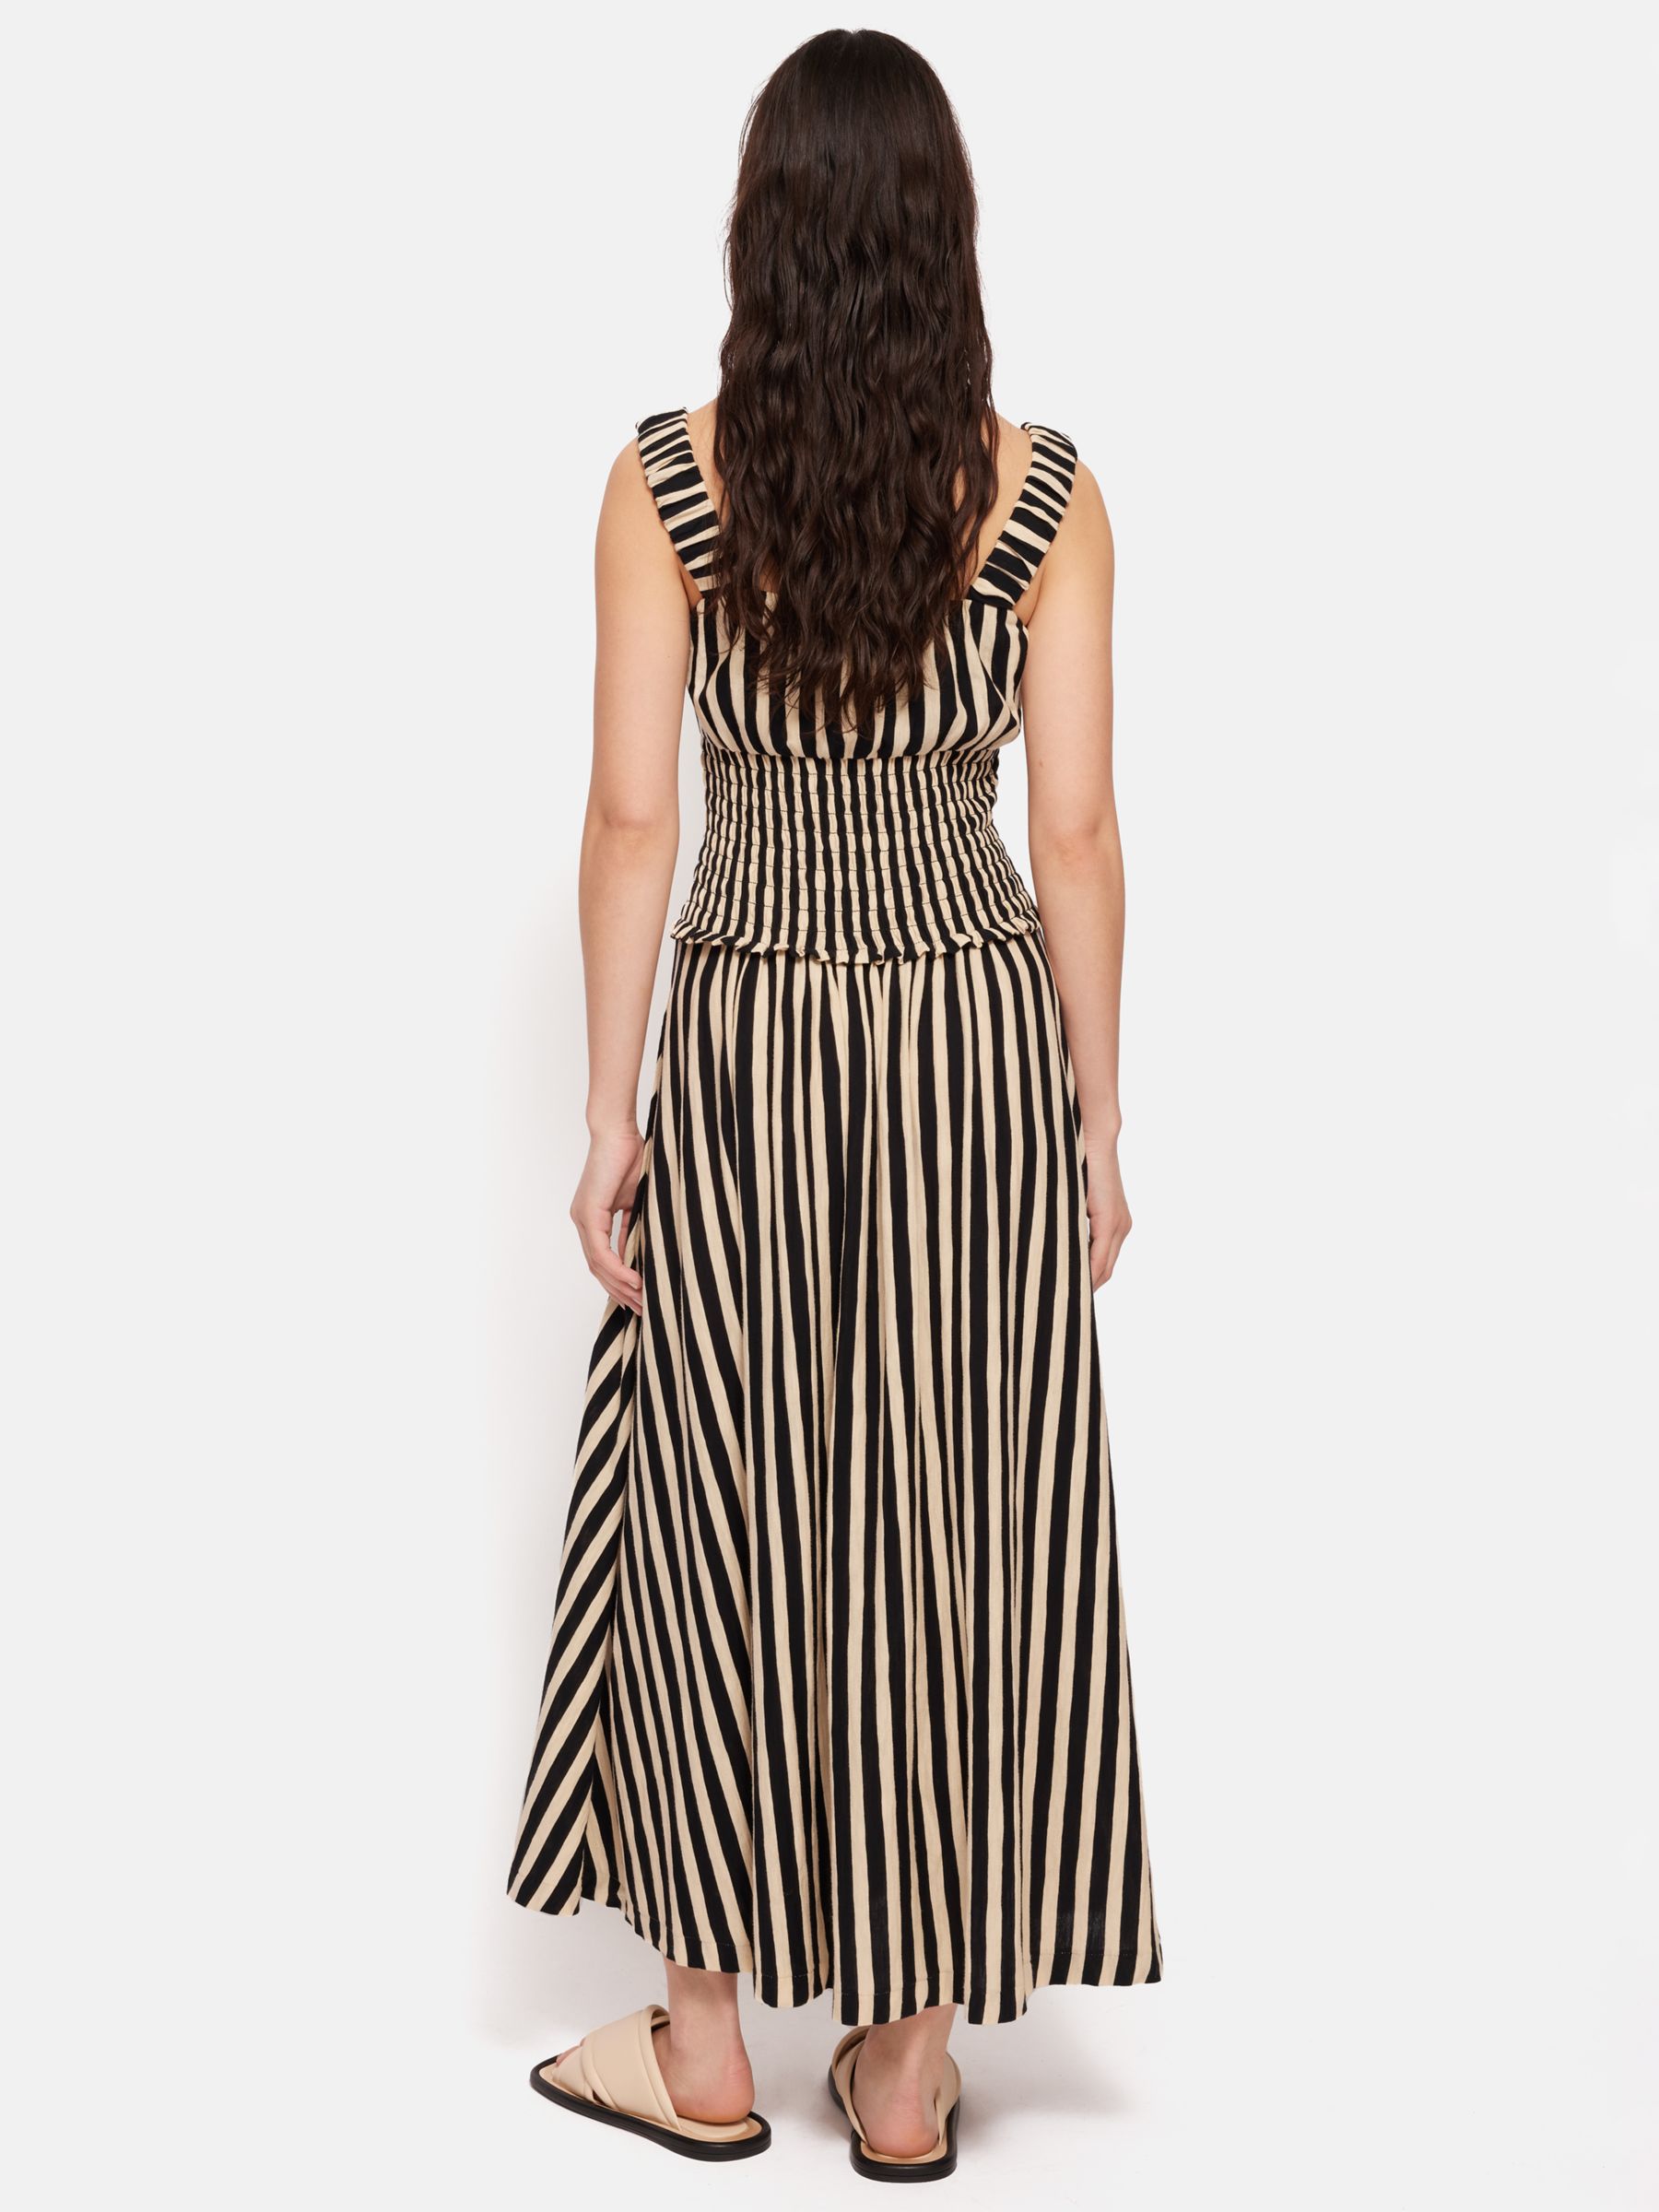 Jigsaw Striped Cotton Slub Jersey Maxi Dress, Black/Beige, XS